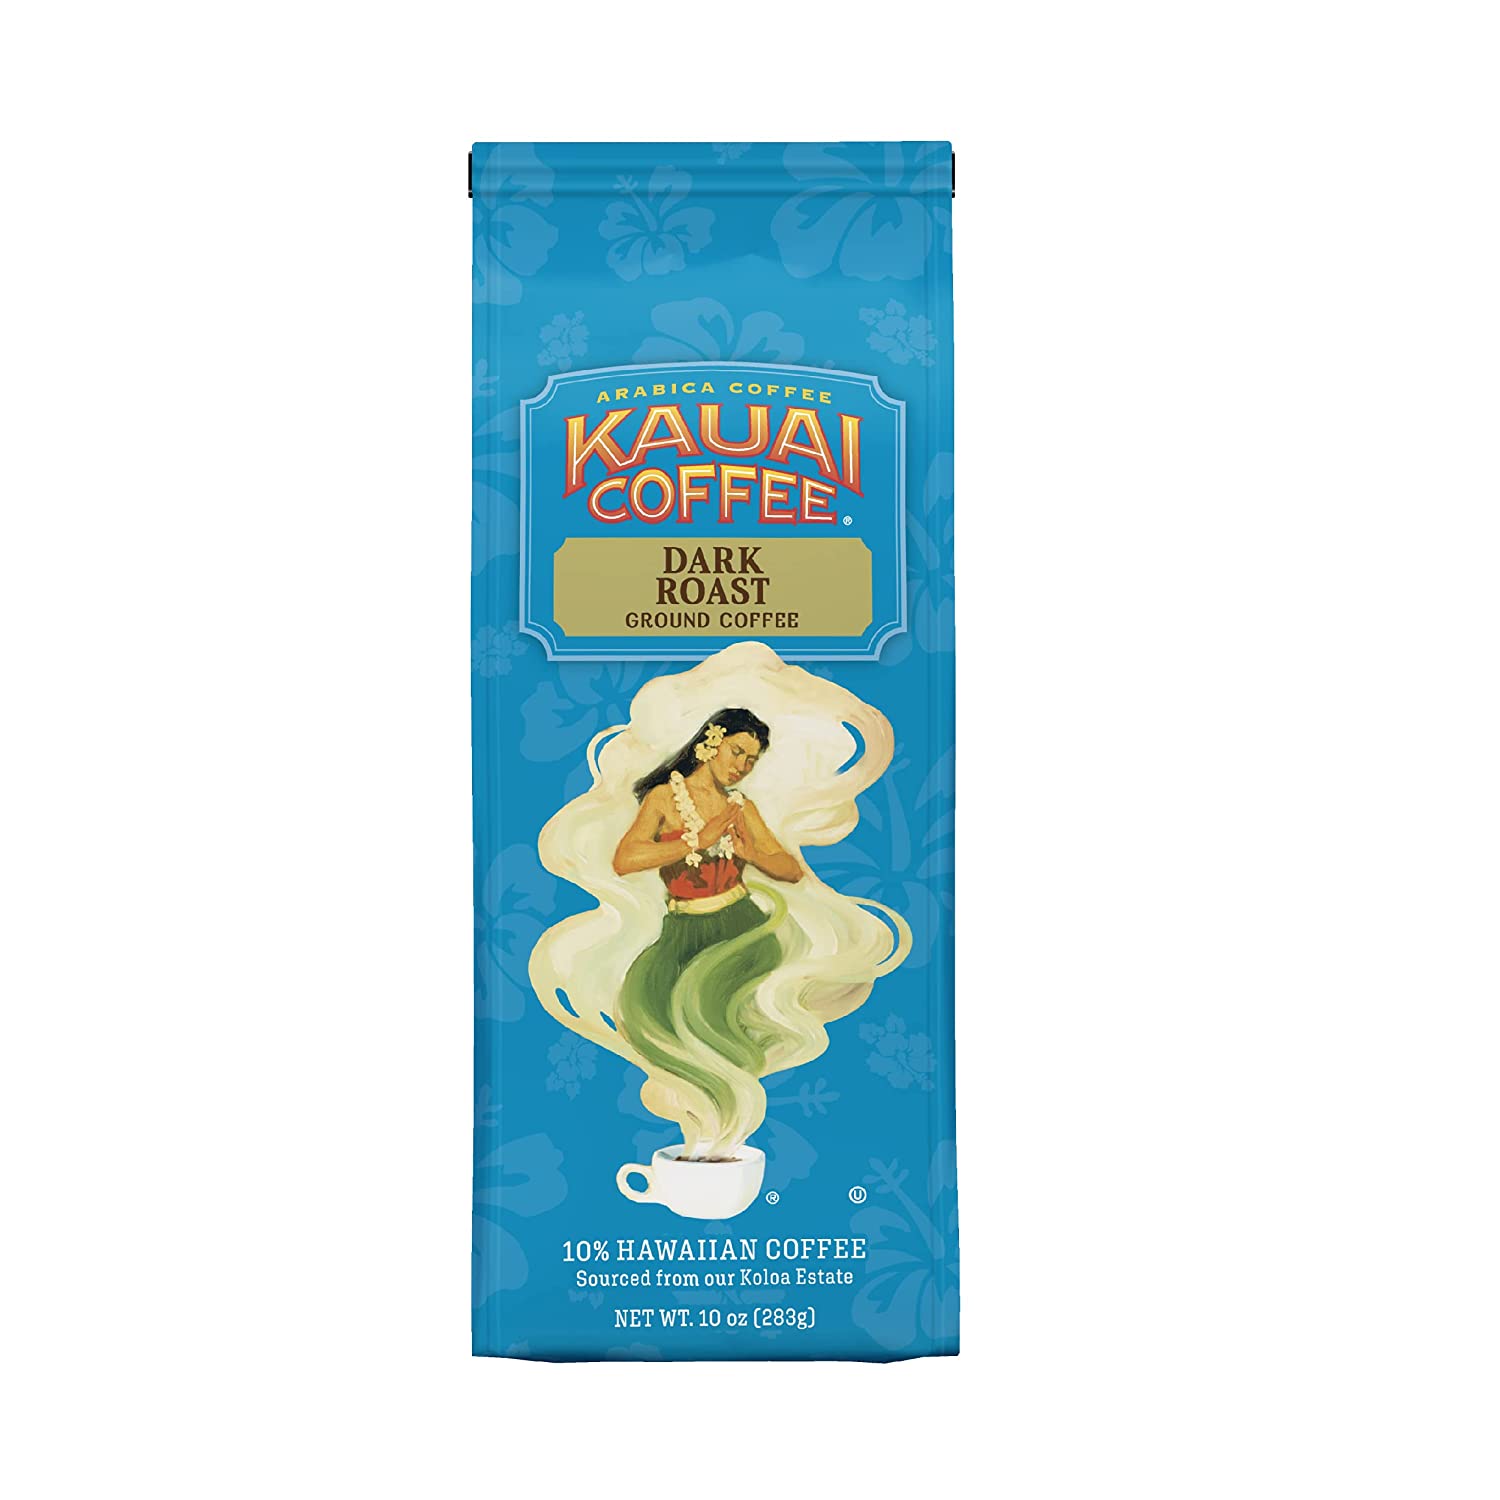 KAUAI COFFEE Sustainable Aromatic Ground Dark Roast Coffee